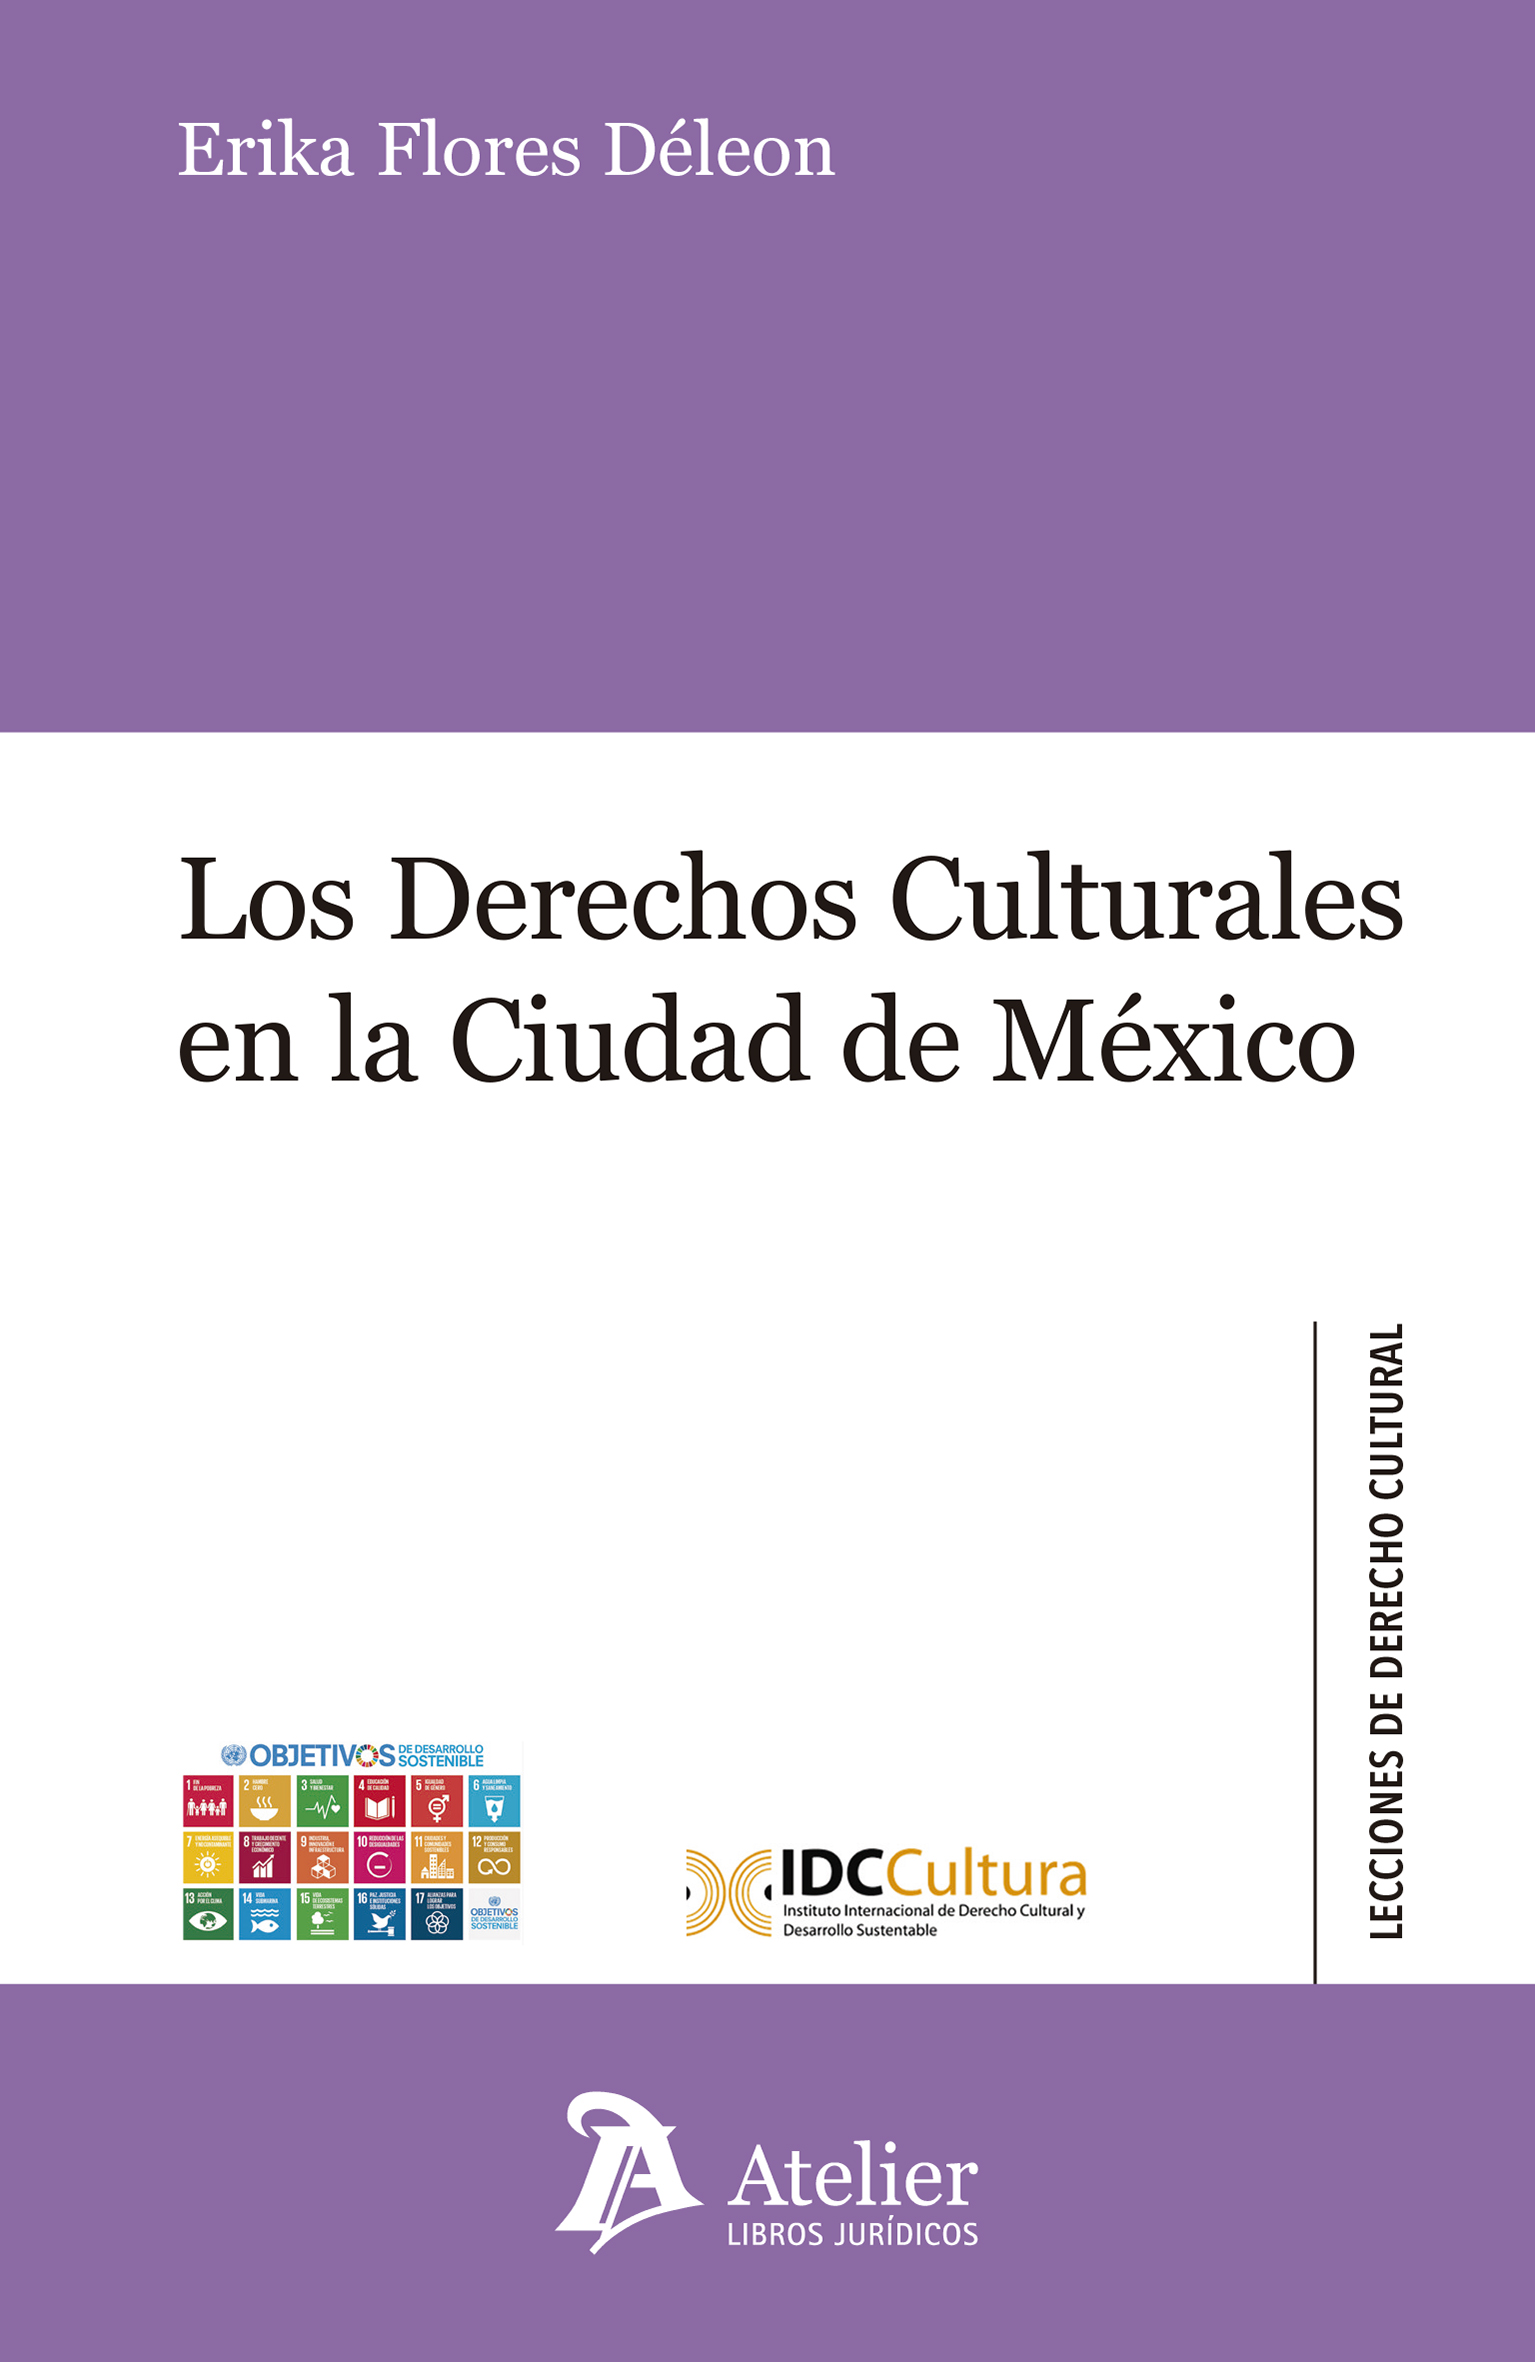 Los derechos culturales en la Ciudad de México